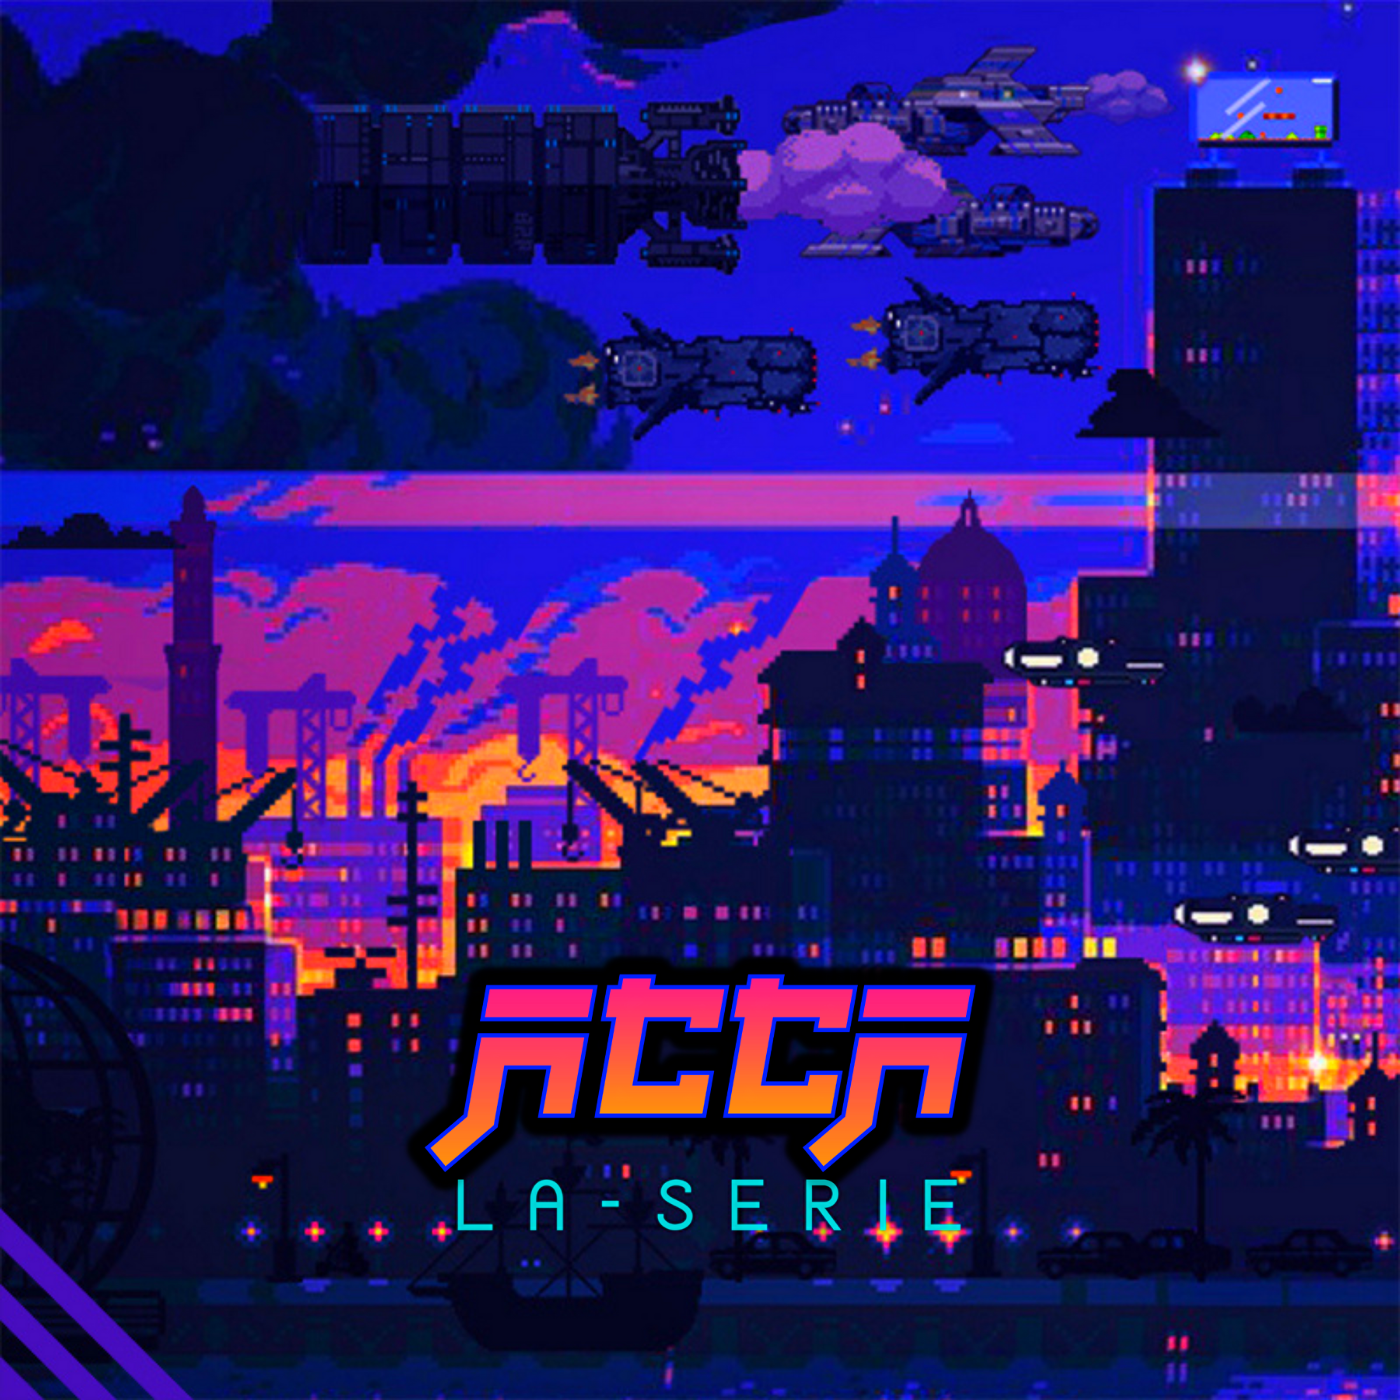 Immagine copertina della seconda puntata della serie ACCA: illustrazione in pixel art, una panoramica di una città italiana futuristica in riva al mare